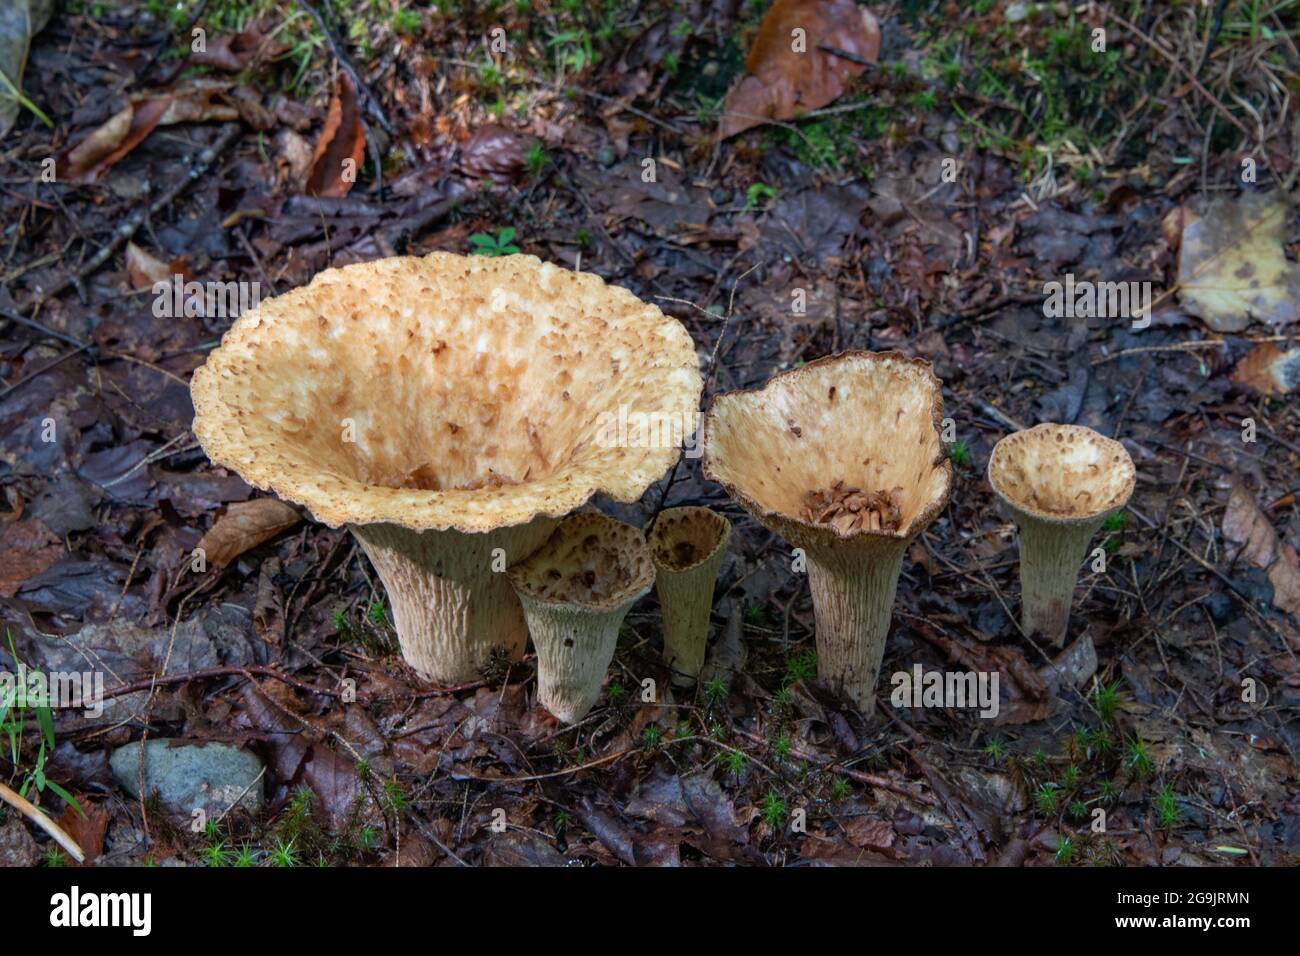 Turbinellus floccosus, comunemente noto come funghi porcini scuri che crescono sul fondo della foresta nelle montagne Adirondack, NY deserto. Foto Stock